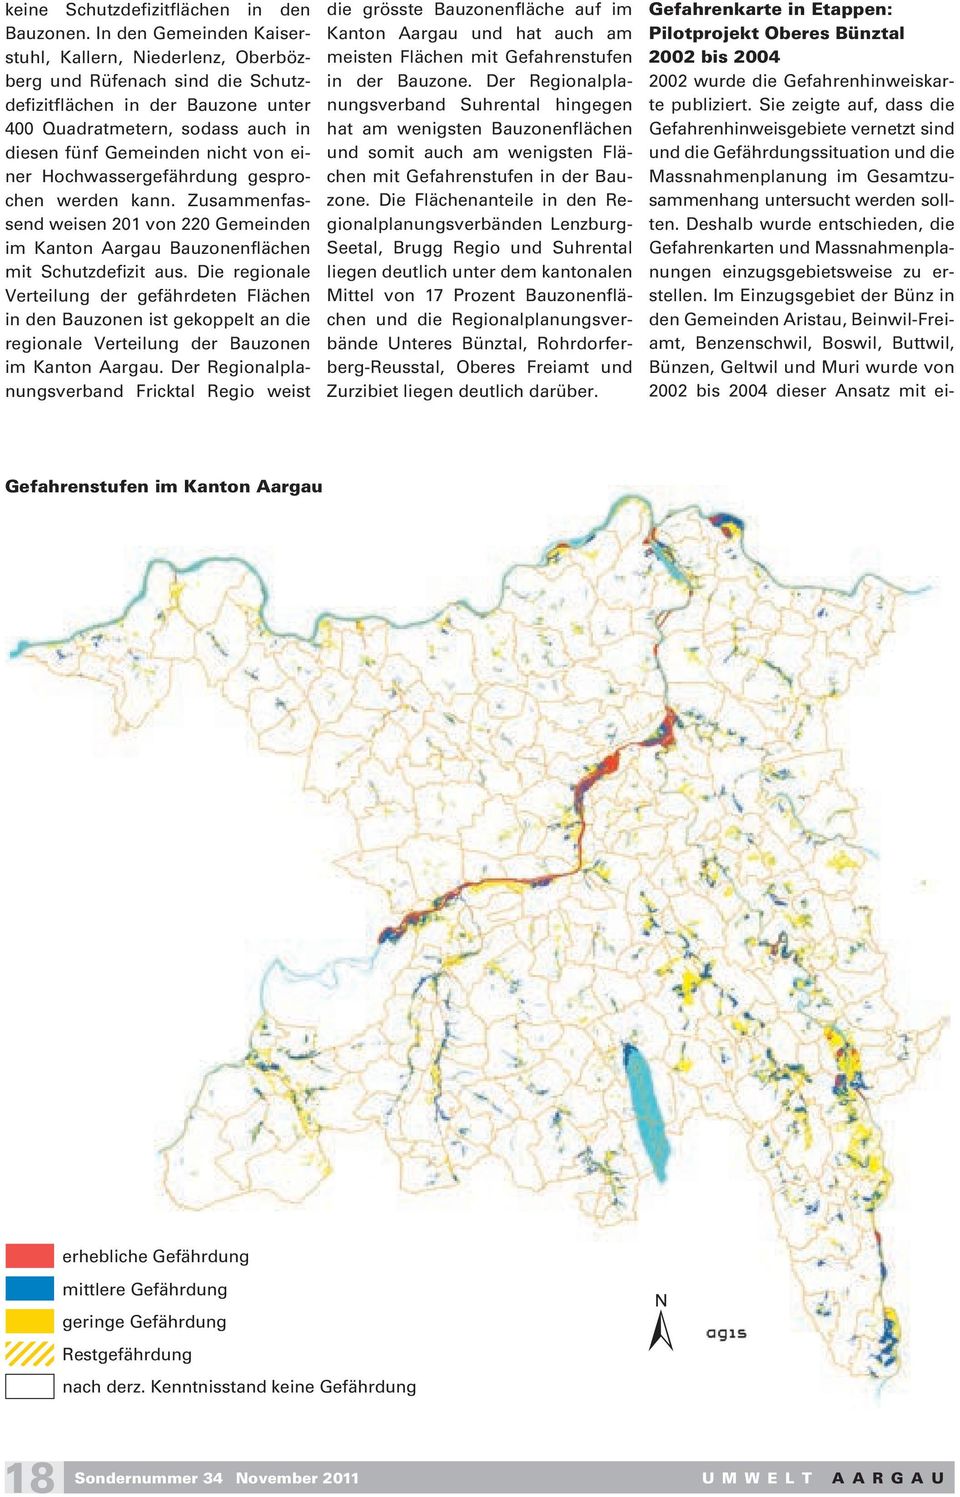 Hochwassergefährdung gesprochen werden kann. Zusammenfassend weisen 201 von 220 Gemeinden im Kanton Aargau Bauzonenflächen mit Schutzdefizit aus.